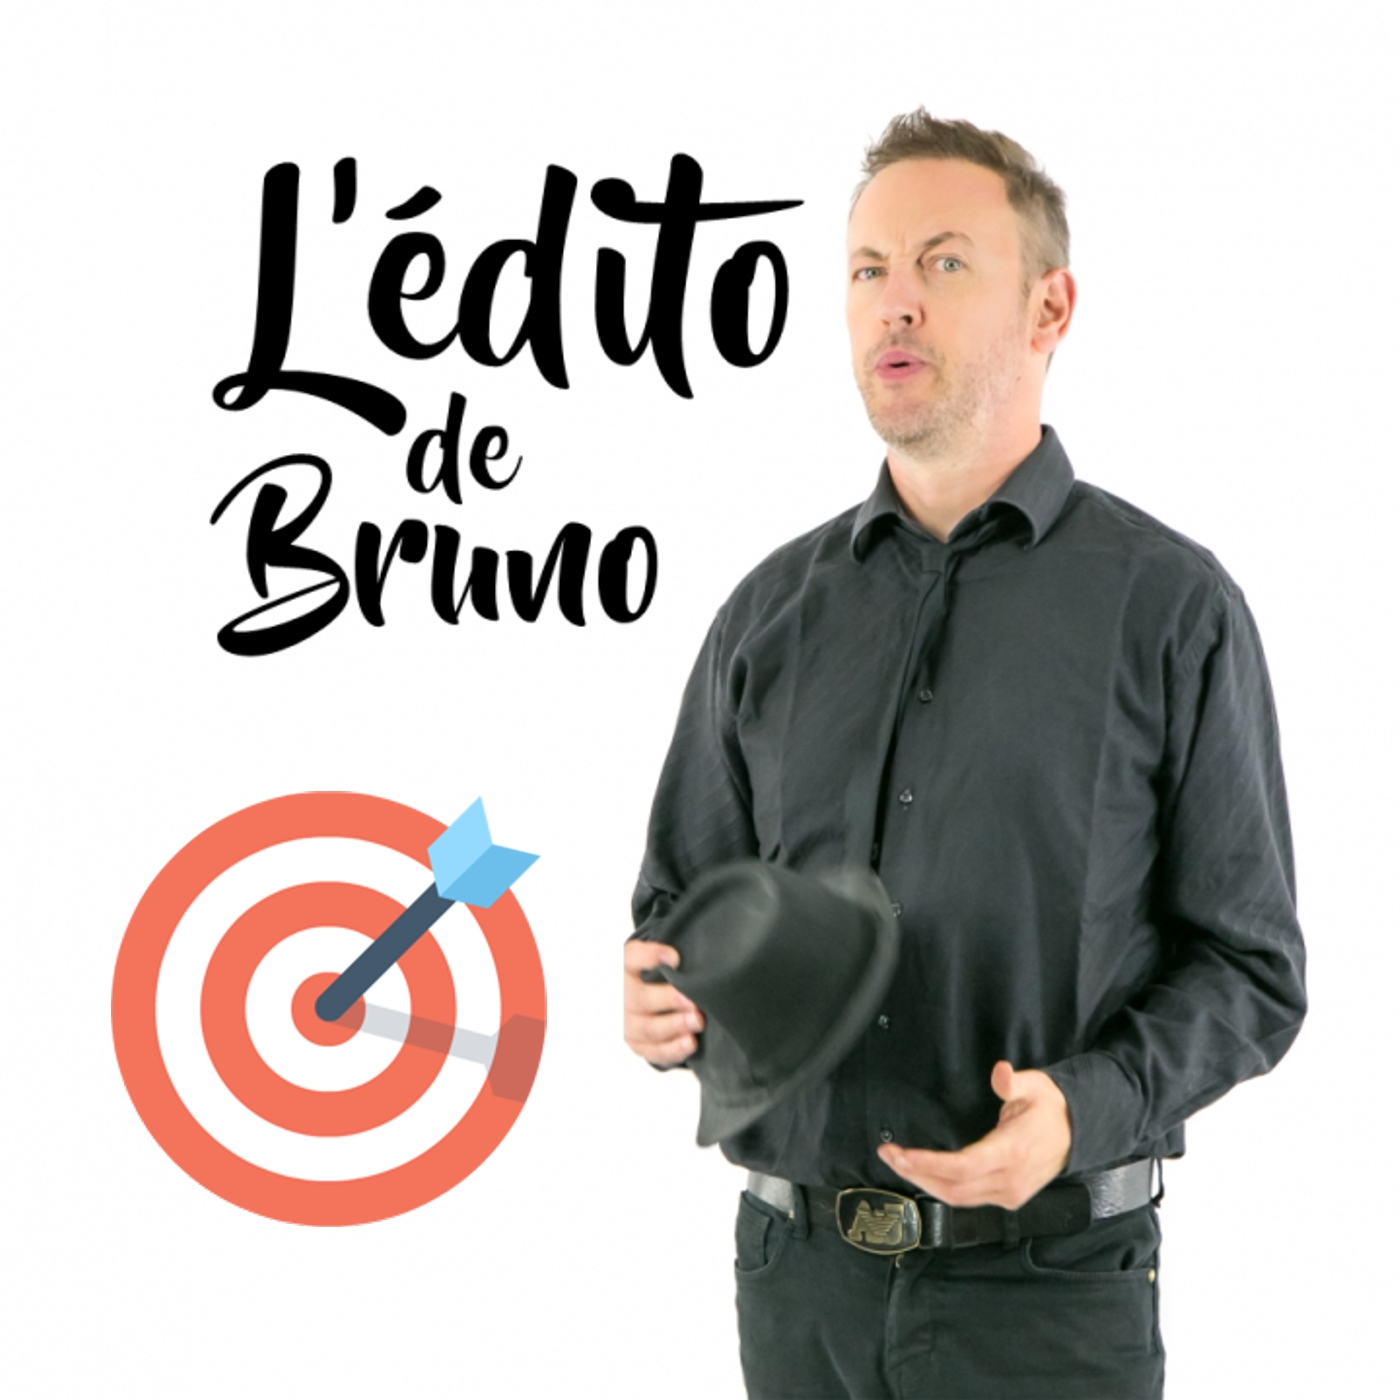 L'édito de Bruno du 23 03 2021 L'édito de Bruno de l'émission Tendance à m'plaire sur Radio G! L'édito de Bruno du 23 03 2021